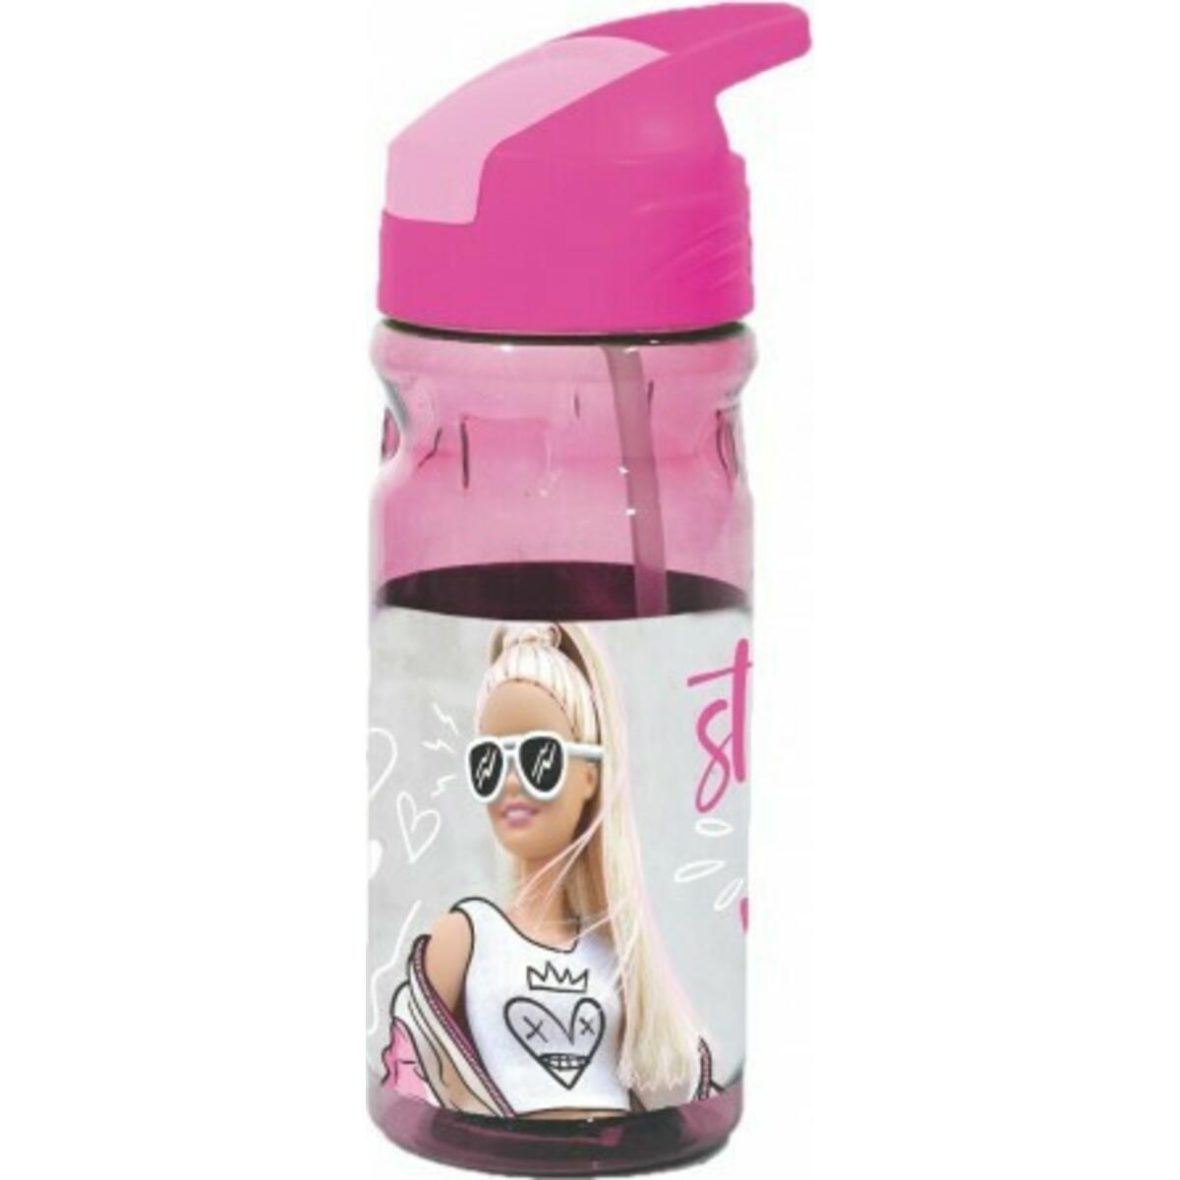 Gim Πλαστικό Παγούρι με Καλαμάκι Barbie σε Ροζ χρώμα 500ml